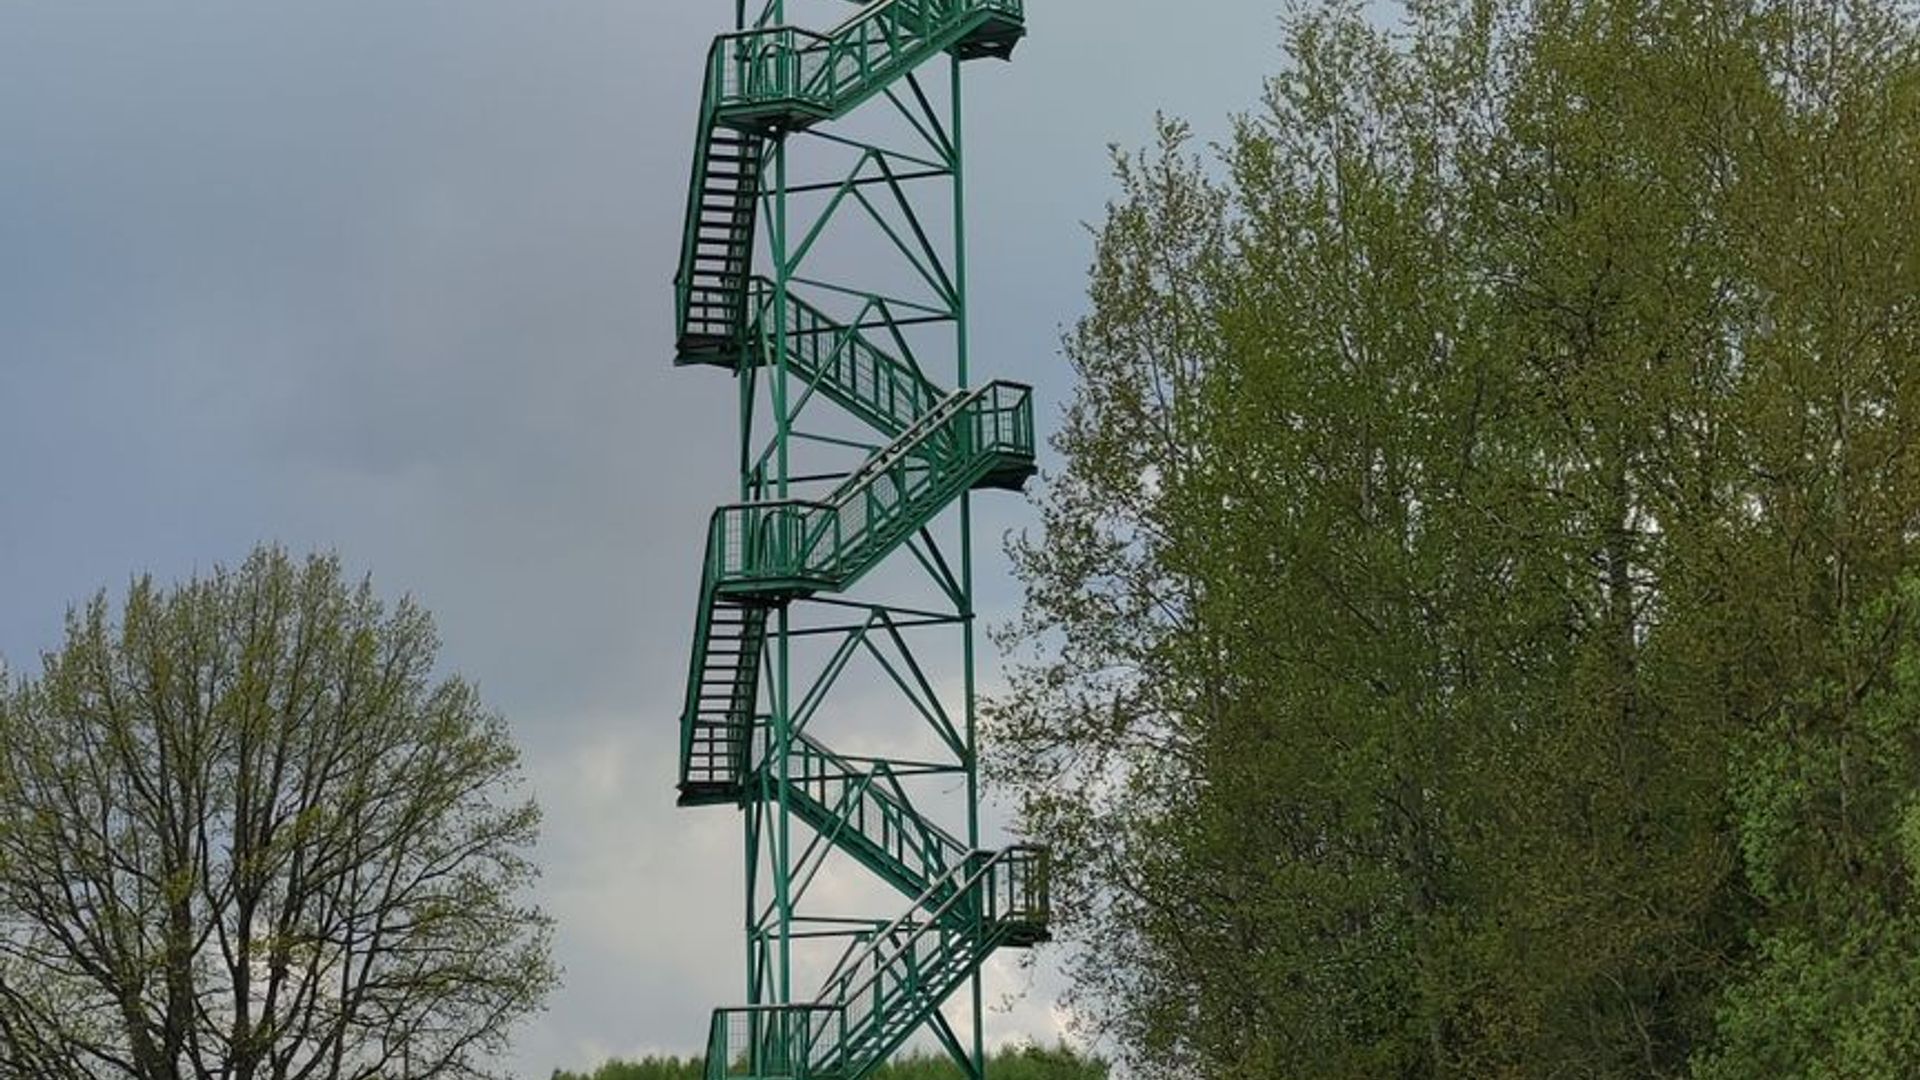 Meilūnai Observation Tower